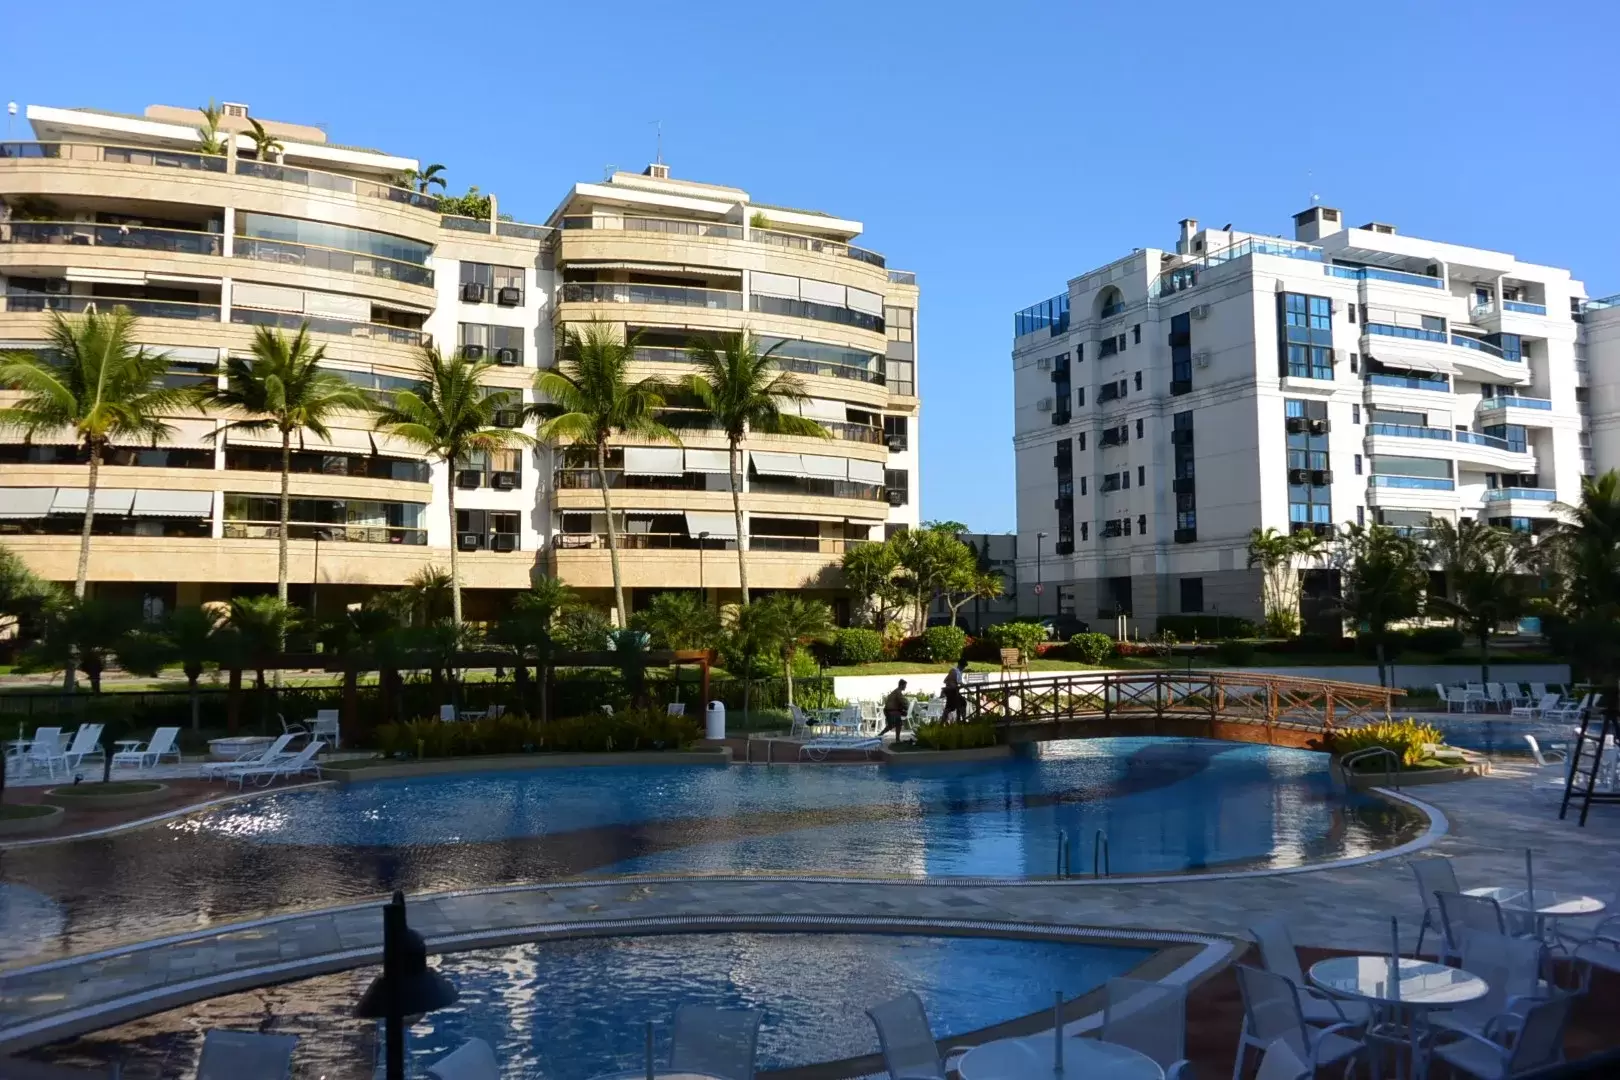 Condomínio Saint Tropez Barra Da Tijuca: Conforto E Comodidade Em Uma Das Regiões Mais Prestigiadas Do Rio De Janeiro